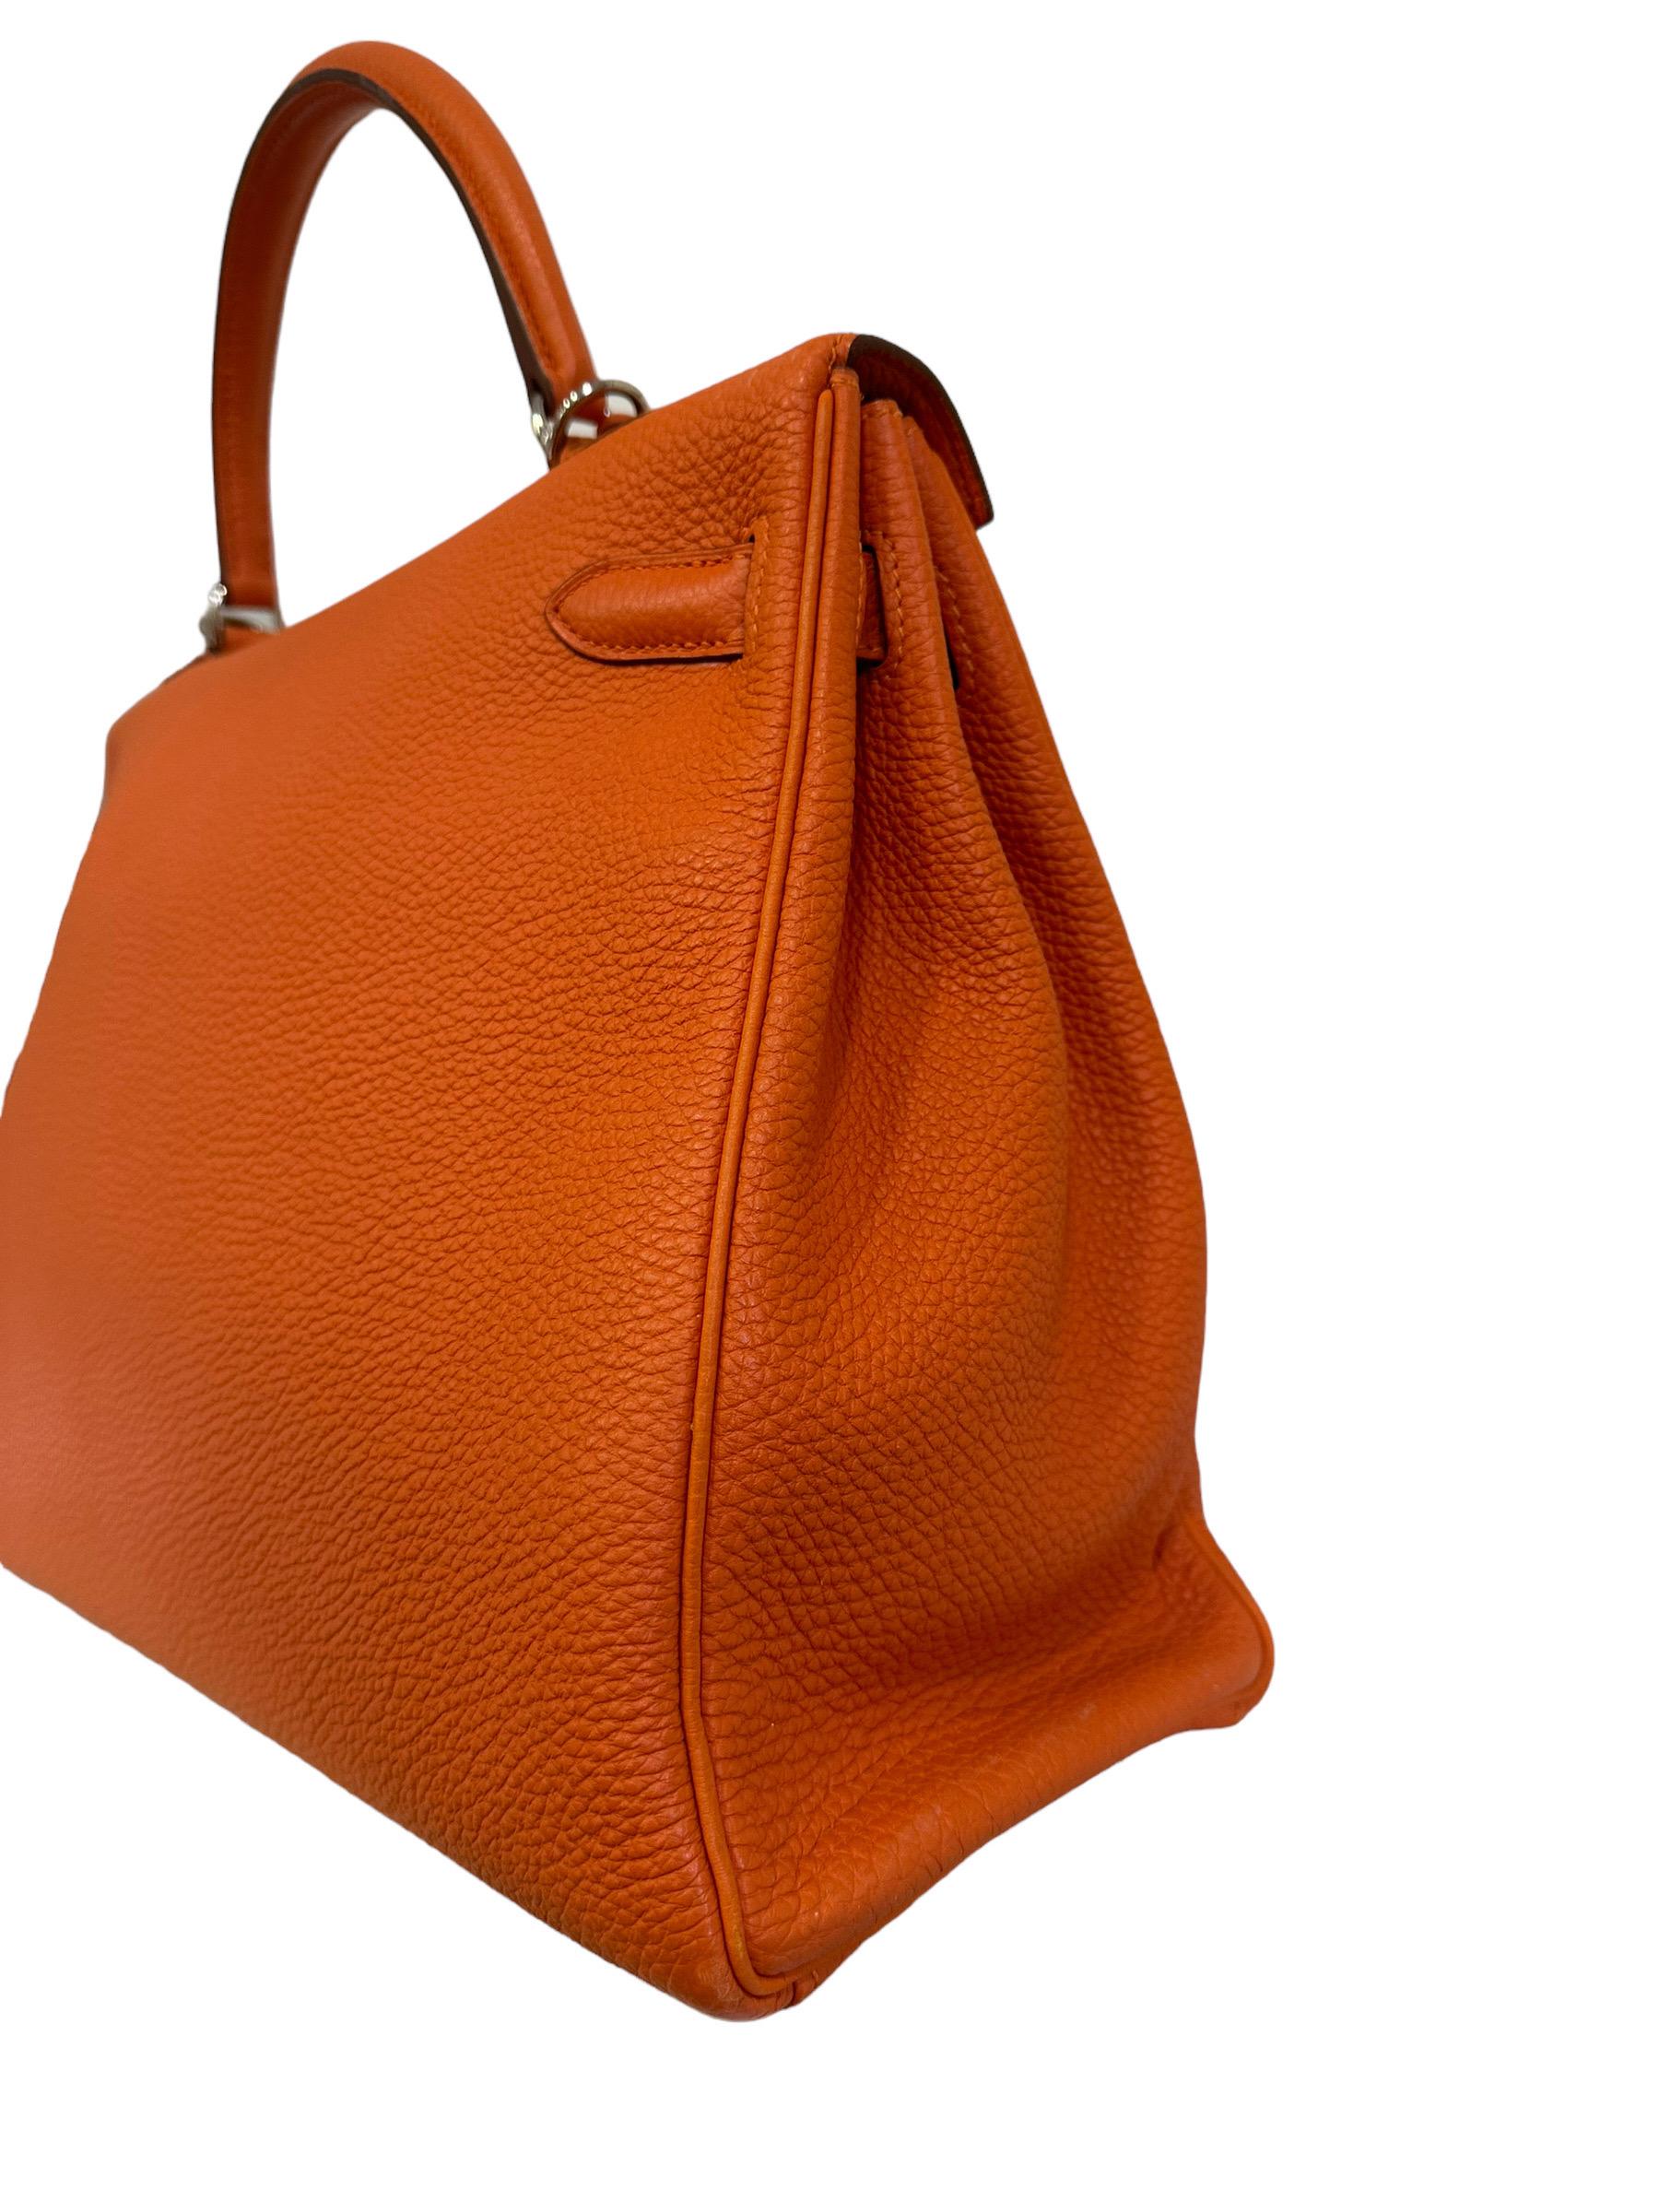 2011 Hermès Kelly 35 Fjord Leather Orange Top Handle Bag  1